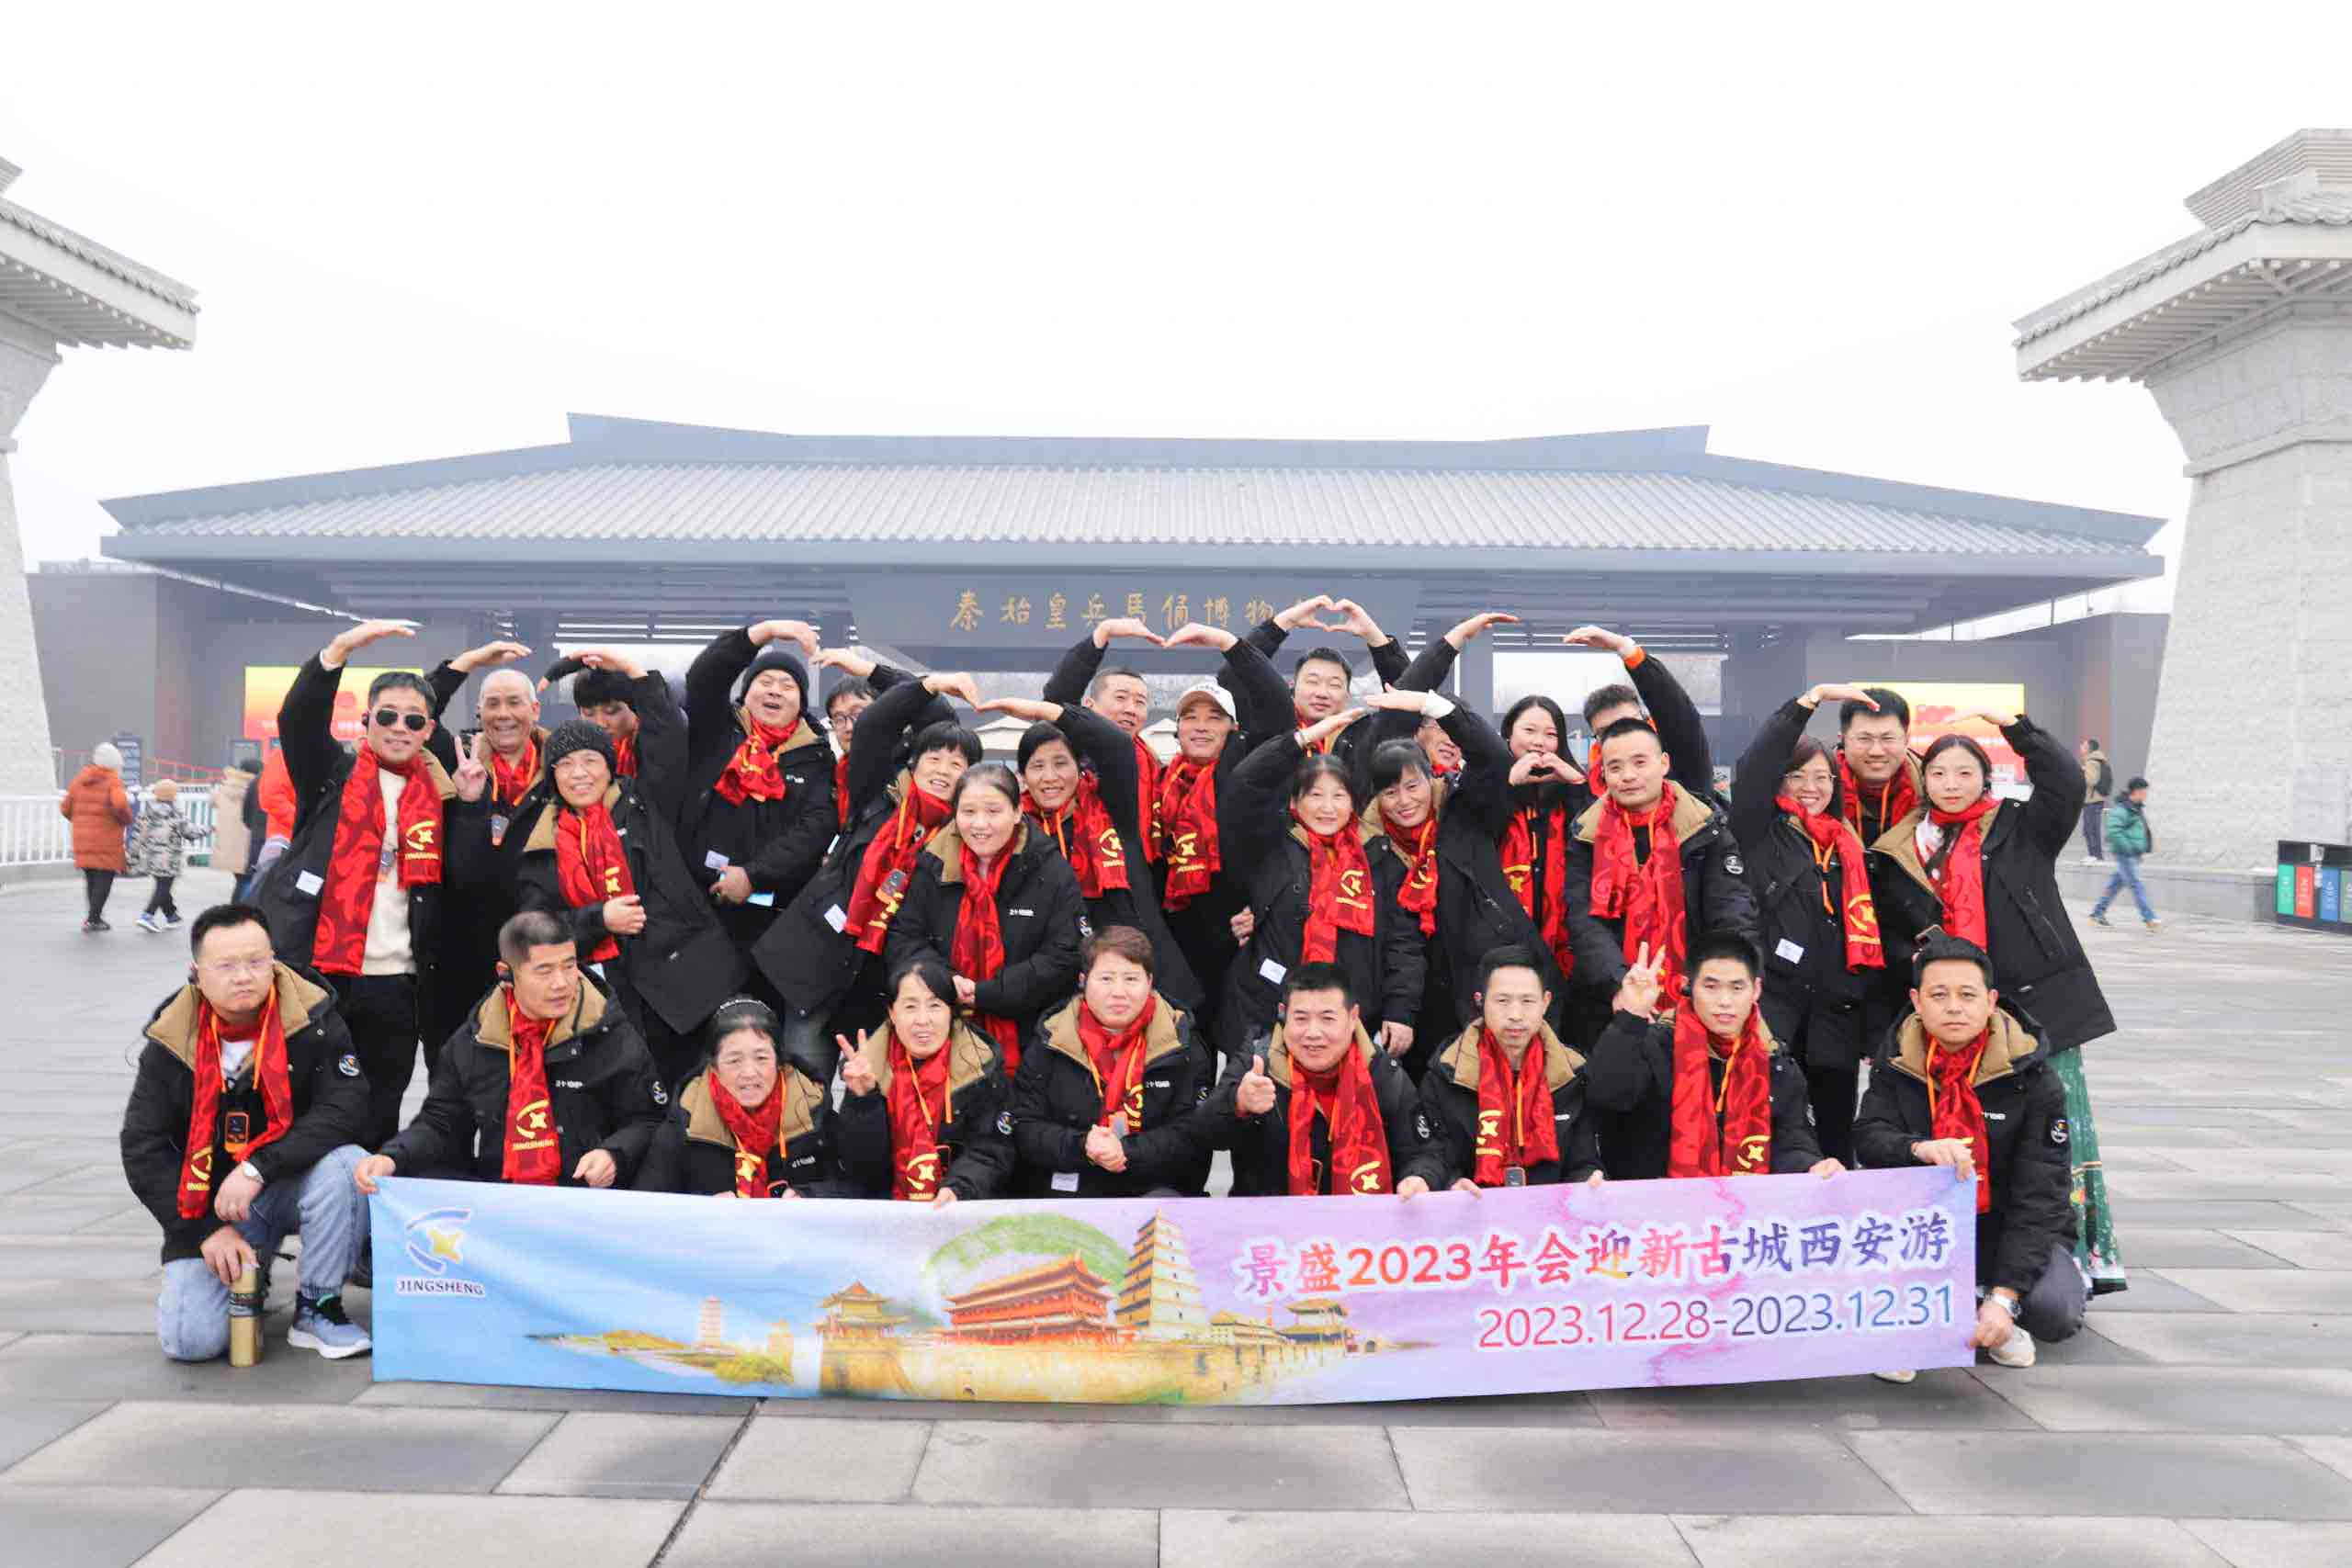 Les employés de l'entreprise profitent de leur voyage dans la ville de Xi'an